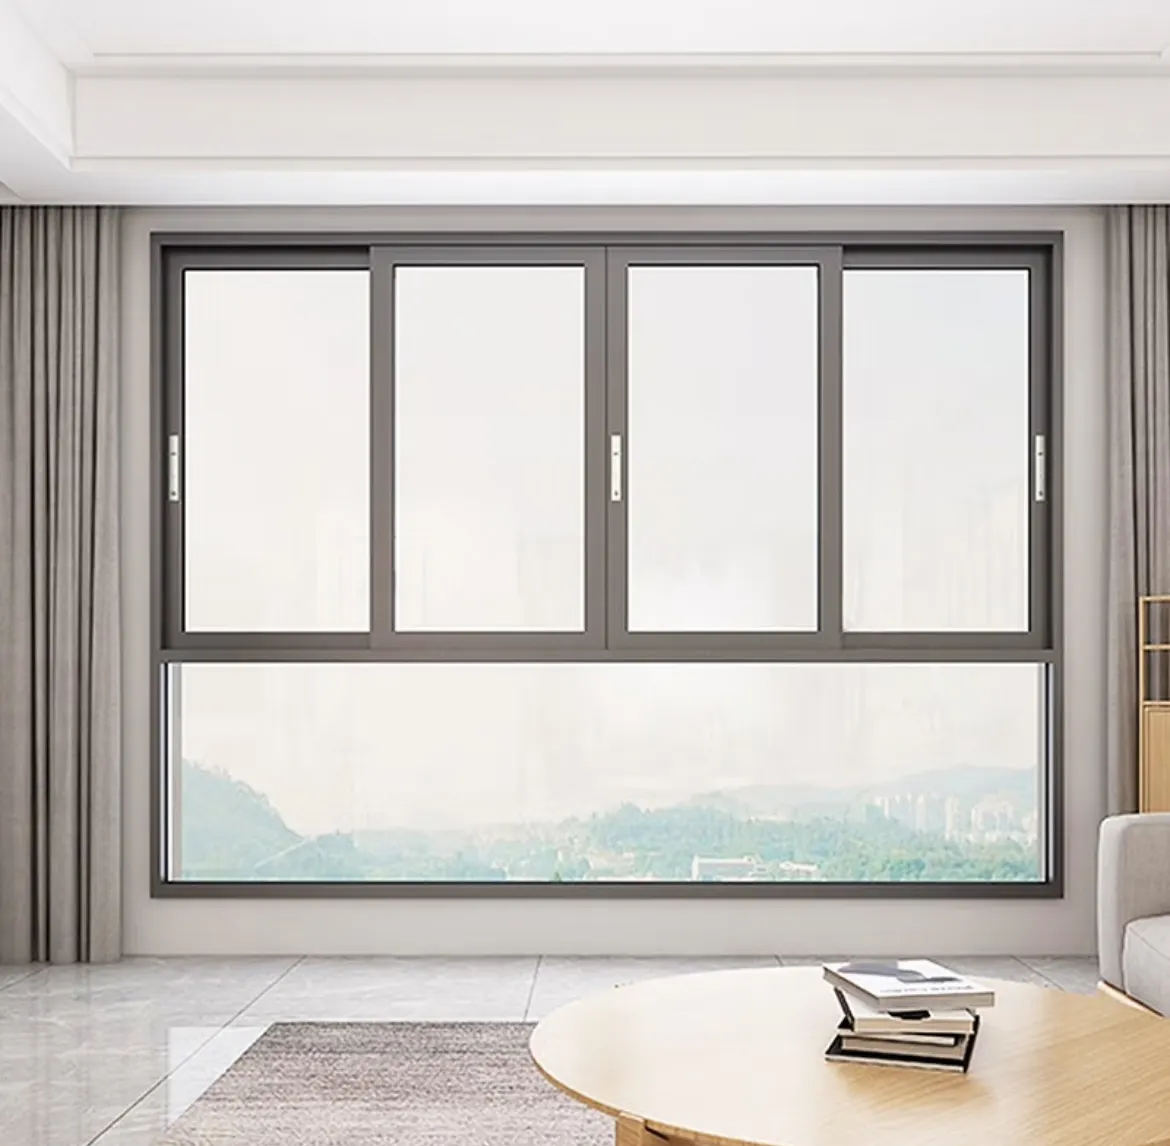 Apartemen kualitas tinggi desain jendela geser kaca Aluminium jendela geser